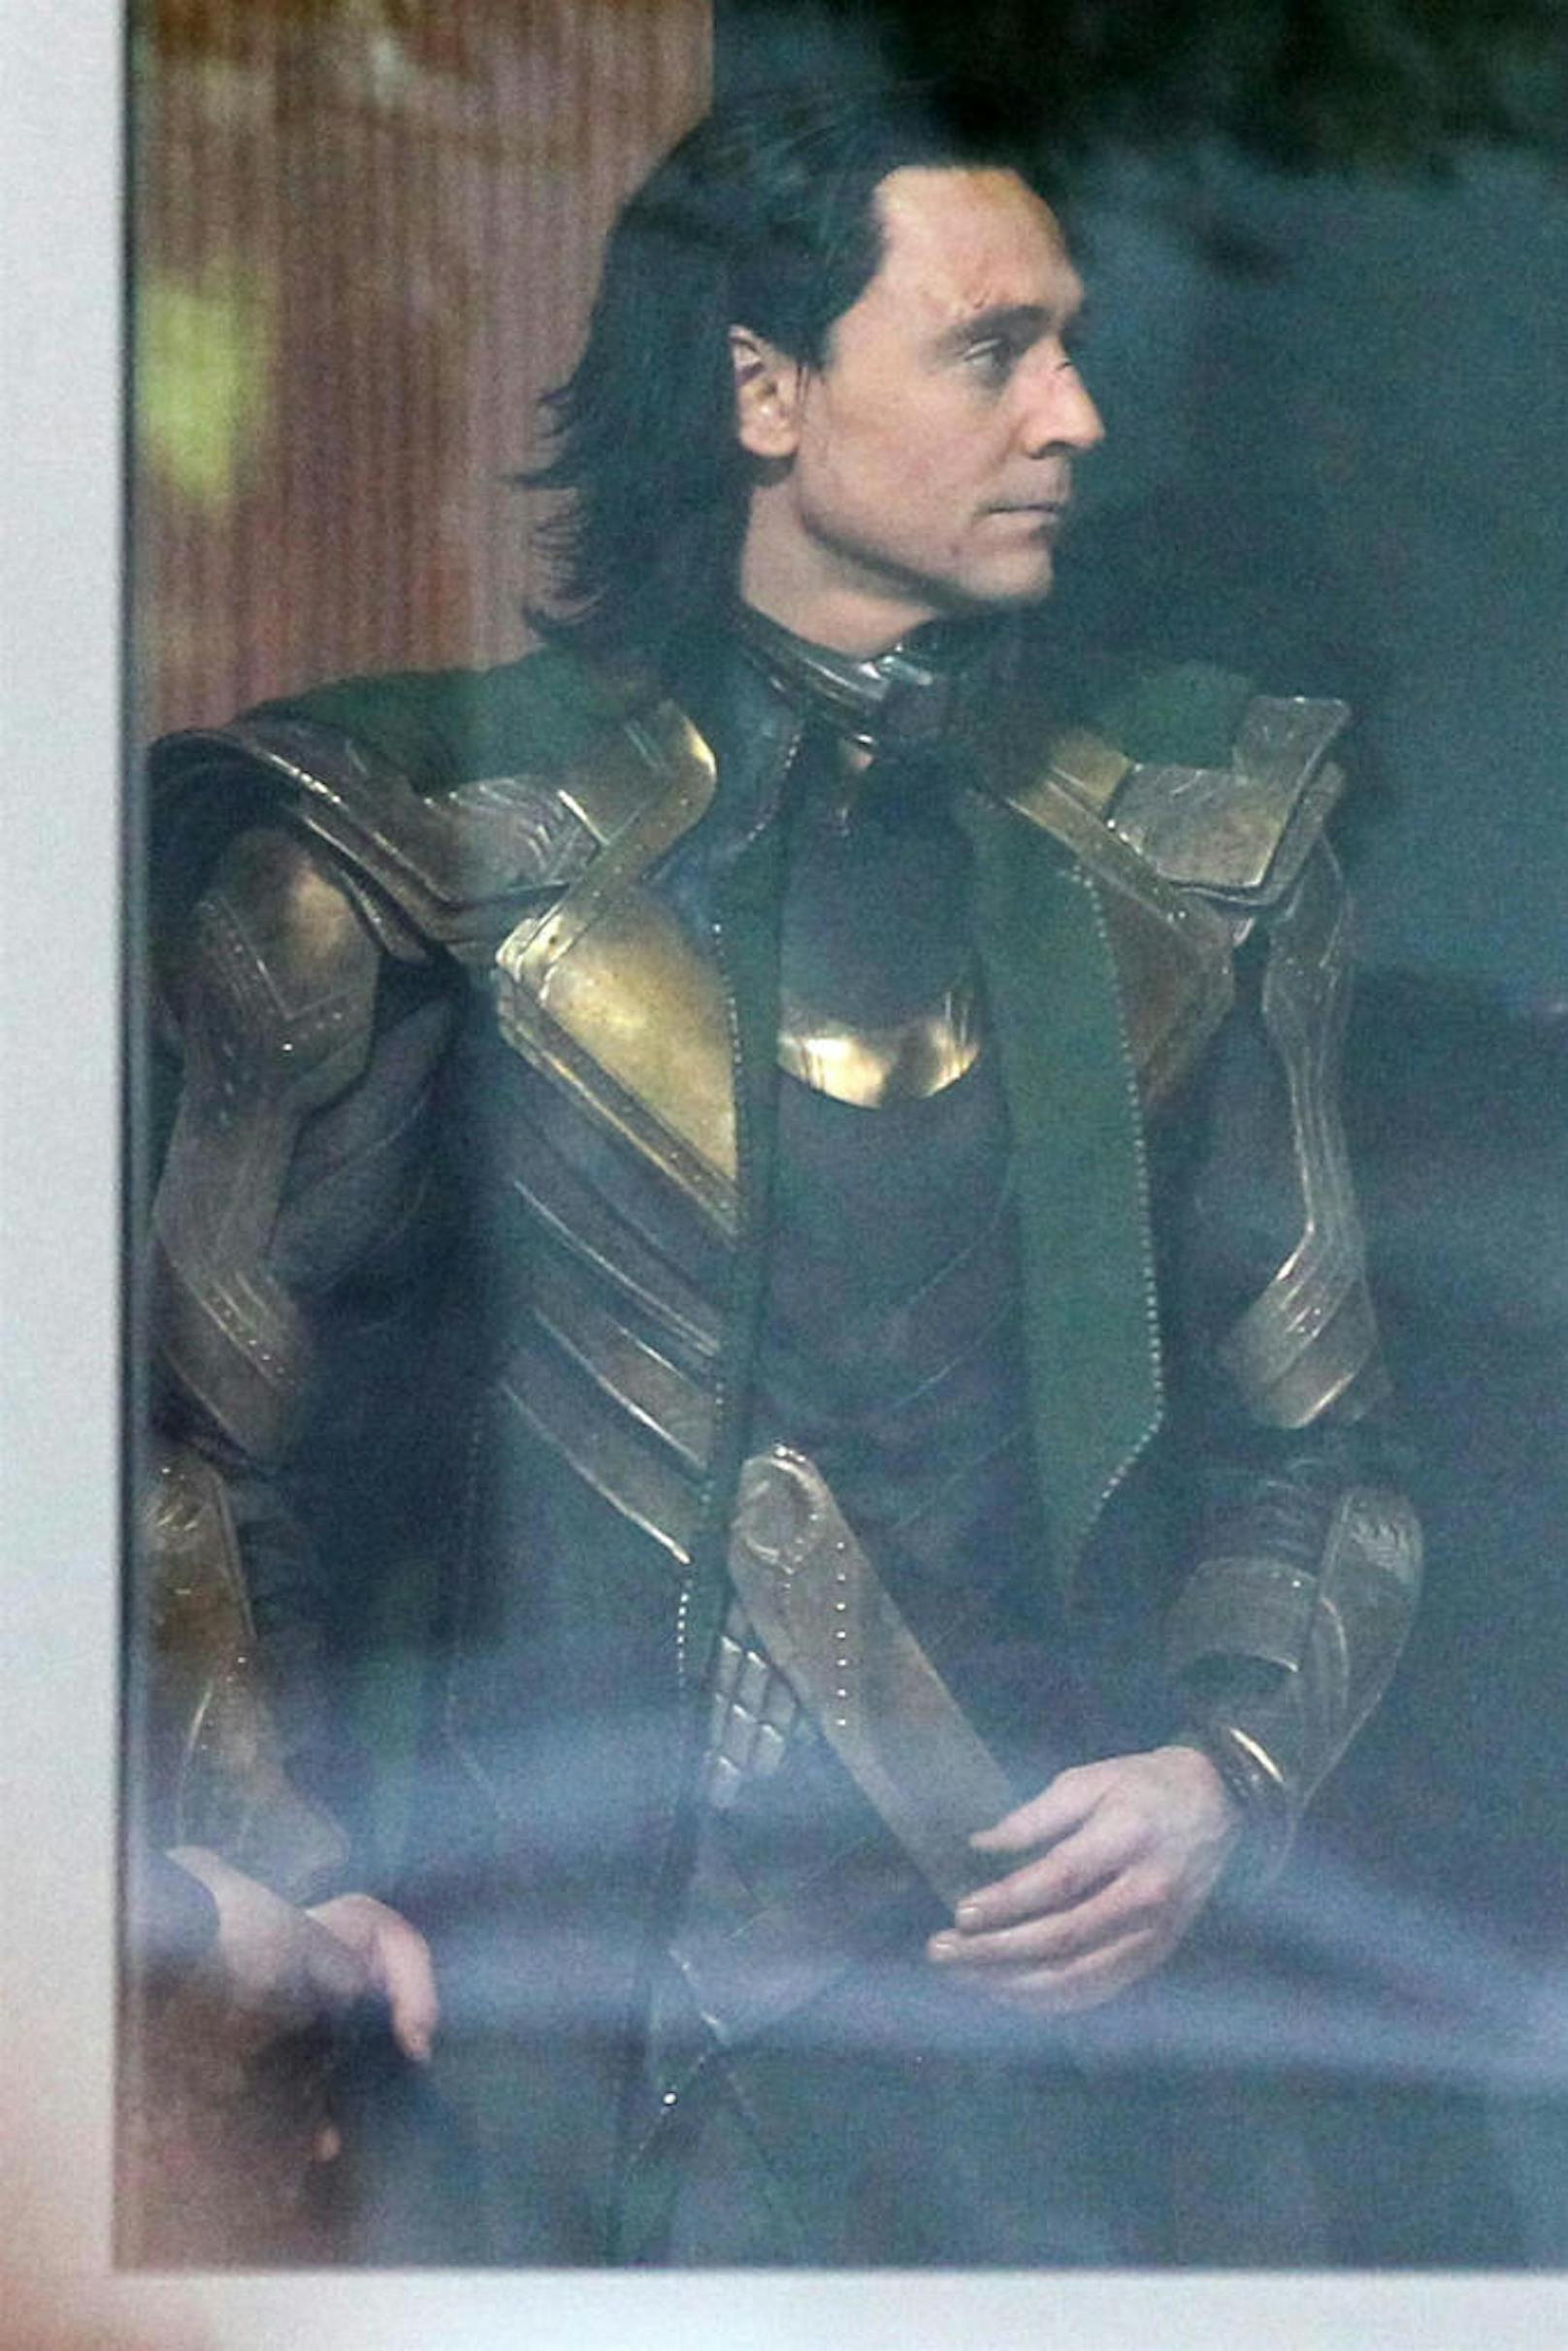 Gezeichnet: So wie die Maske Loki zugerichtet hat, wird er wohl im neuen Film wieder einige Schläge abbekommen